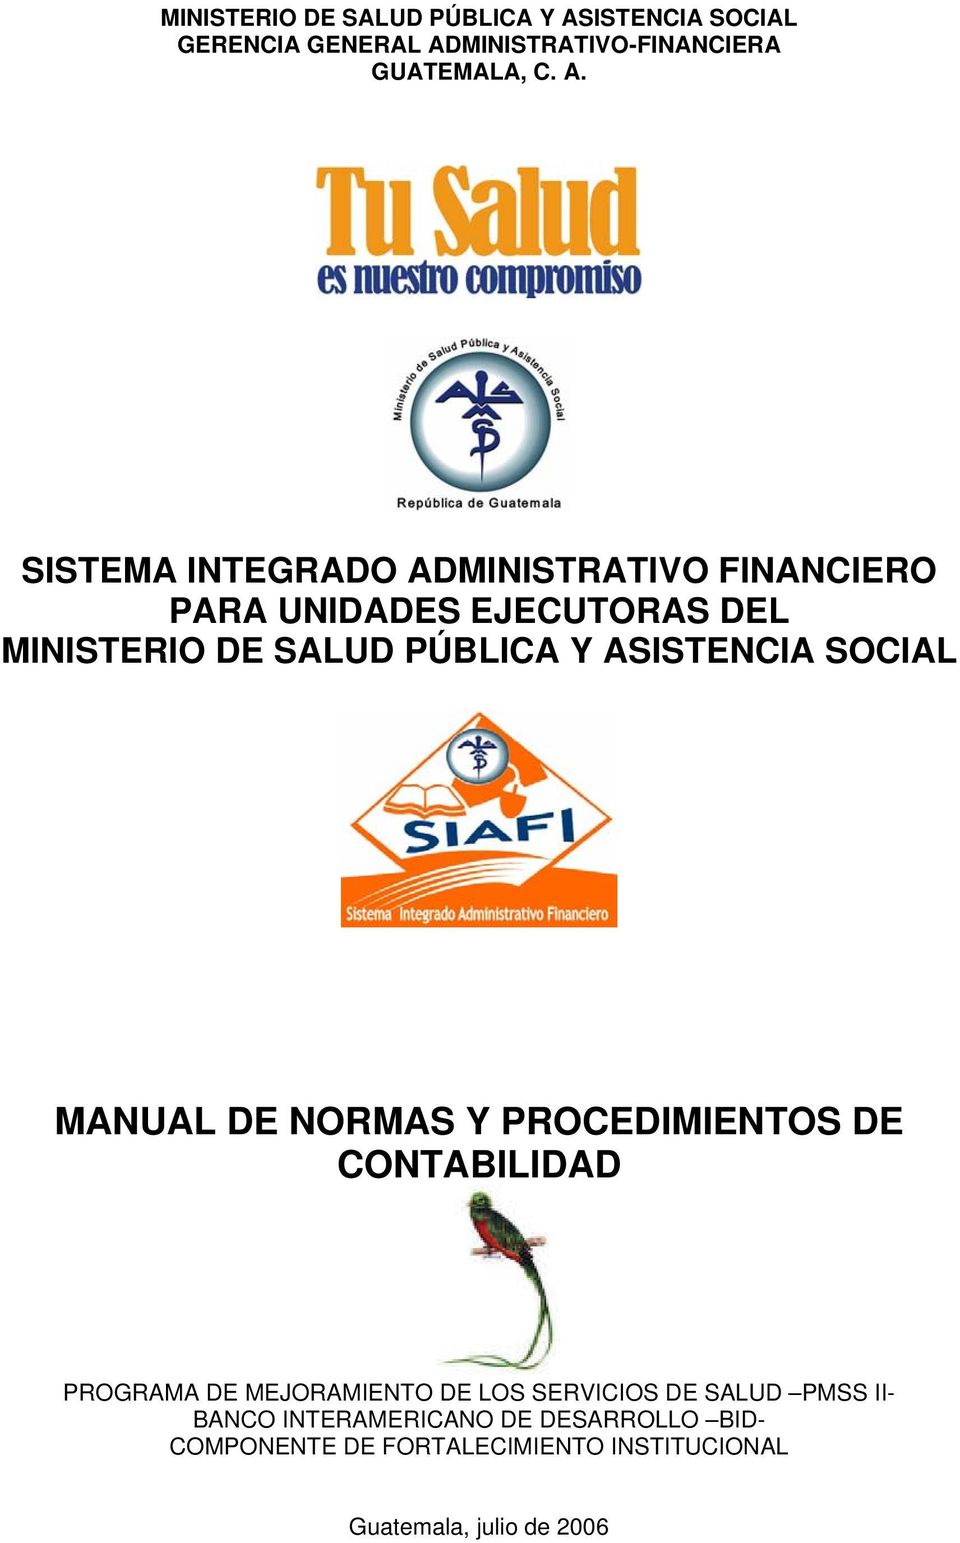 MINISTRATIVO-FINANCIERA GUATEMALA, C. A.